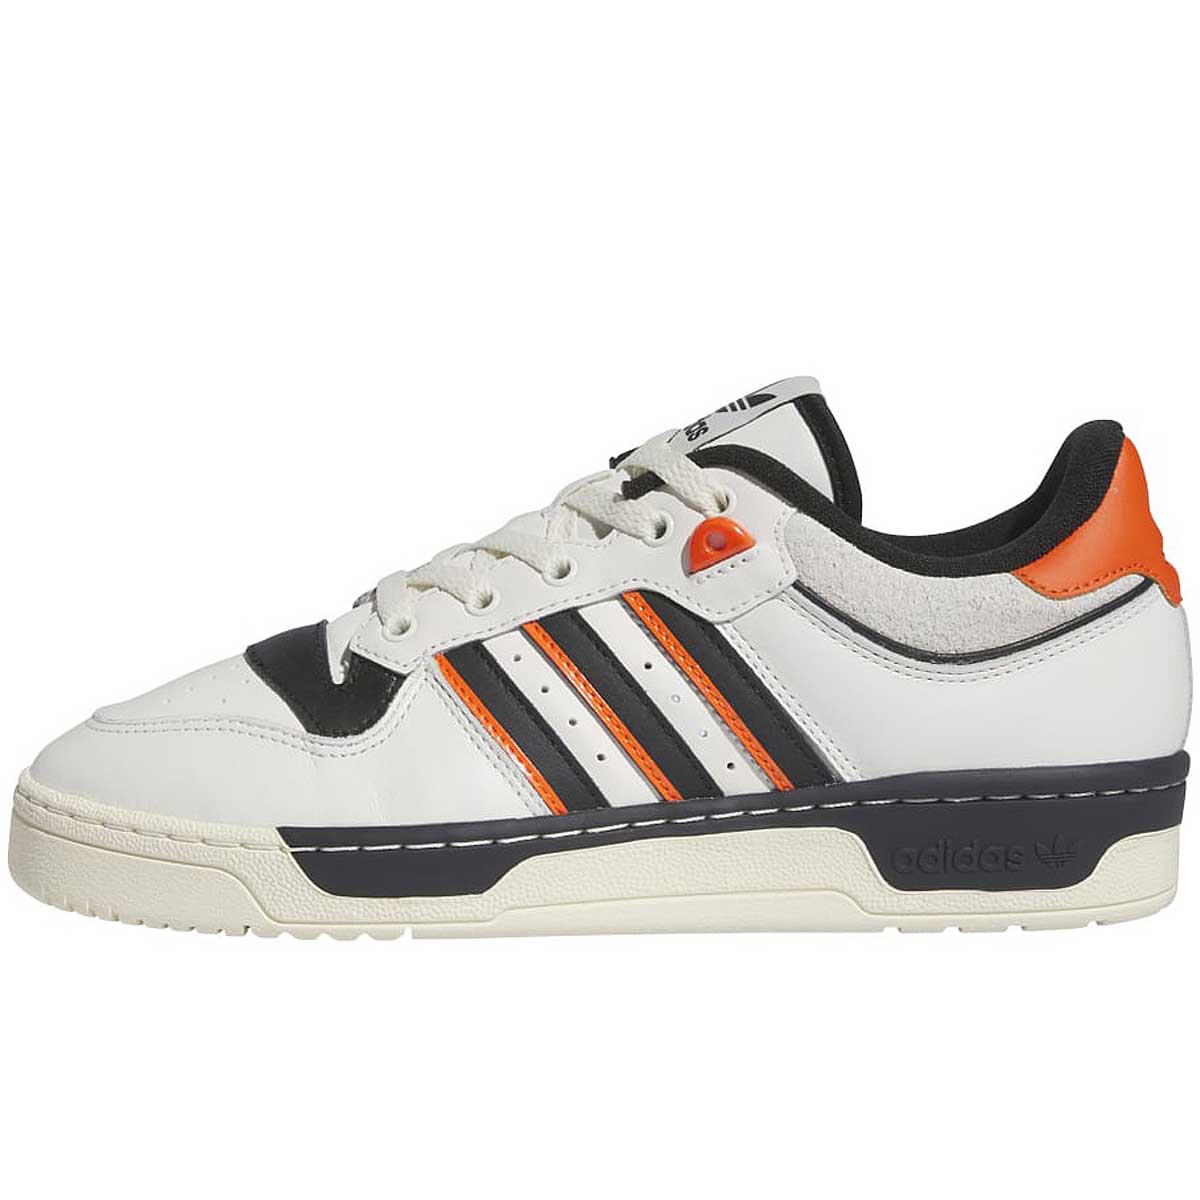 Adidas Rivalry 86 Low, White/black/orange EU45 1/3